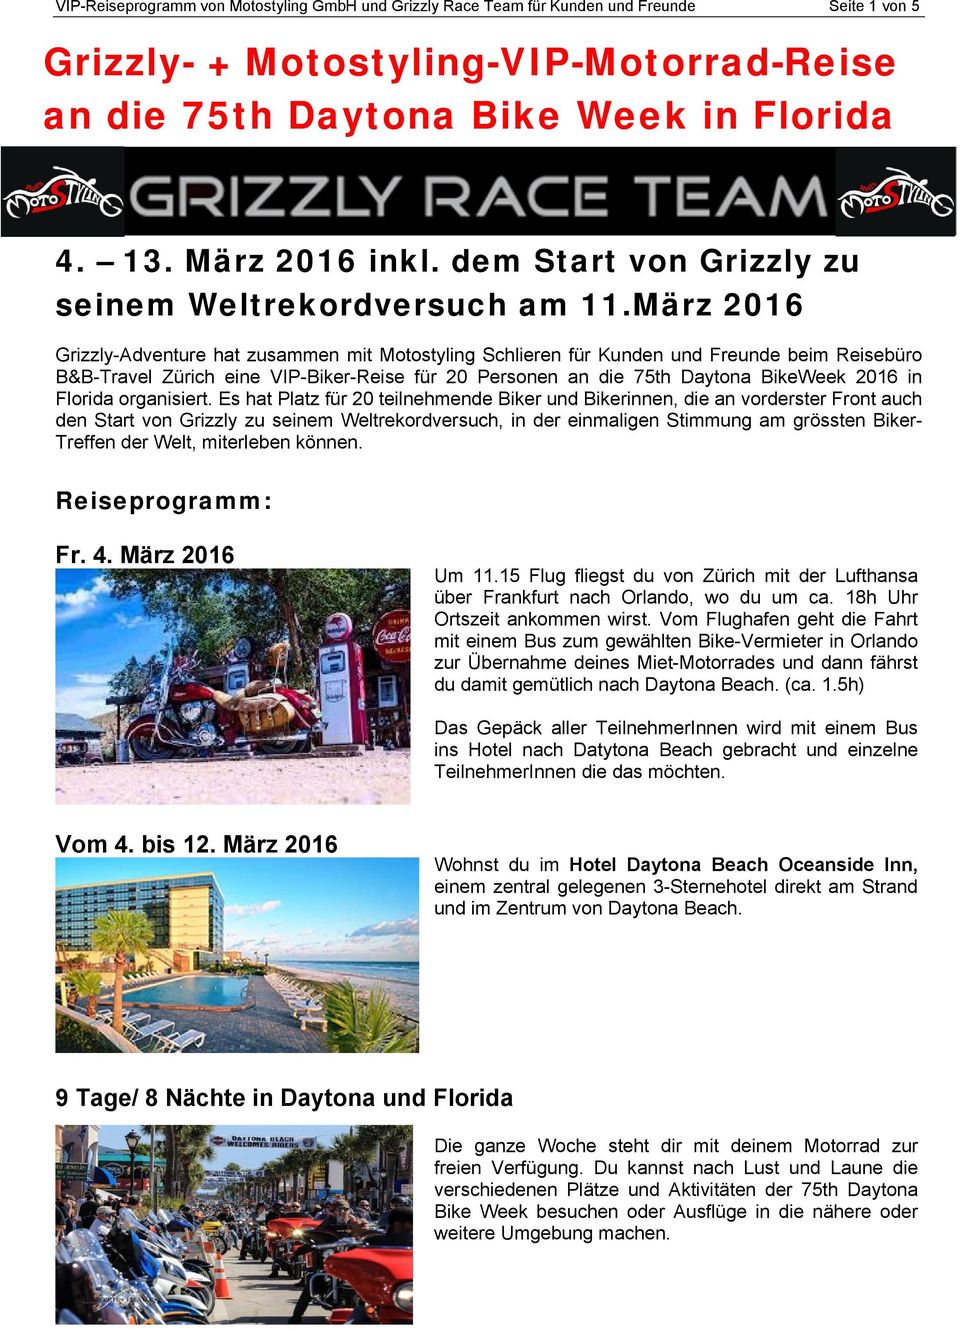 März 2016 Grizzly-Adventure hat zusammen mit Motostyling Schlieren für Kunden und Freunde beim Reisebüro B&B-Travel Zürich eine VIP-Biker-Reise für 20 Personen an die 75th Daytona BikeWeek 2016 in